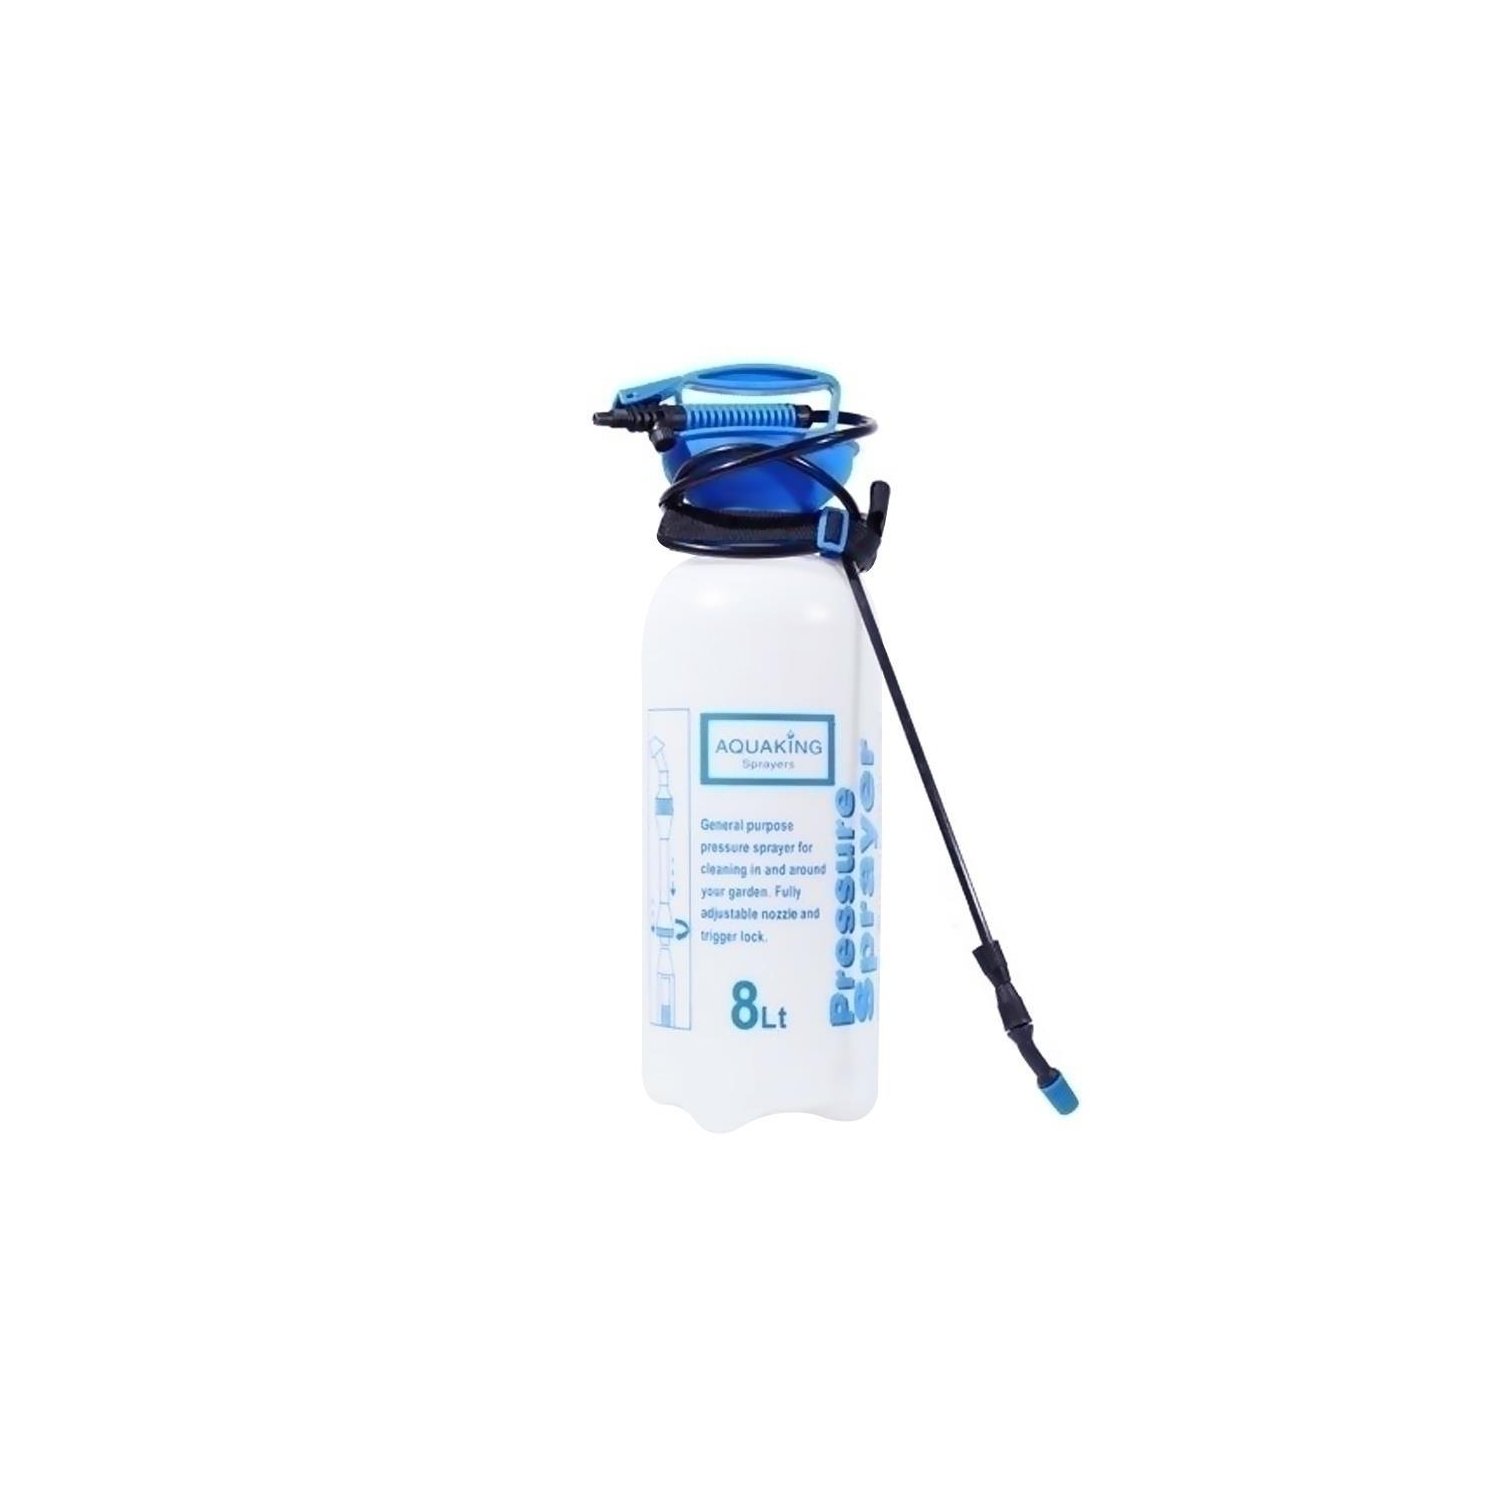 AquaKing Drucksprüher 8L unter Luft & Wasser > Bewässerung > Zubehör